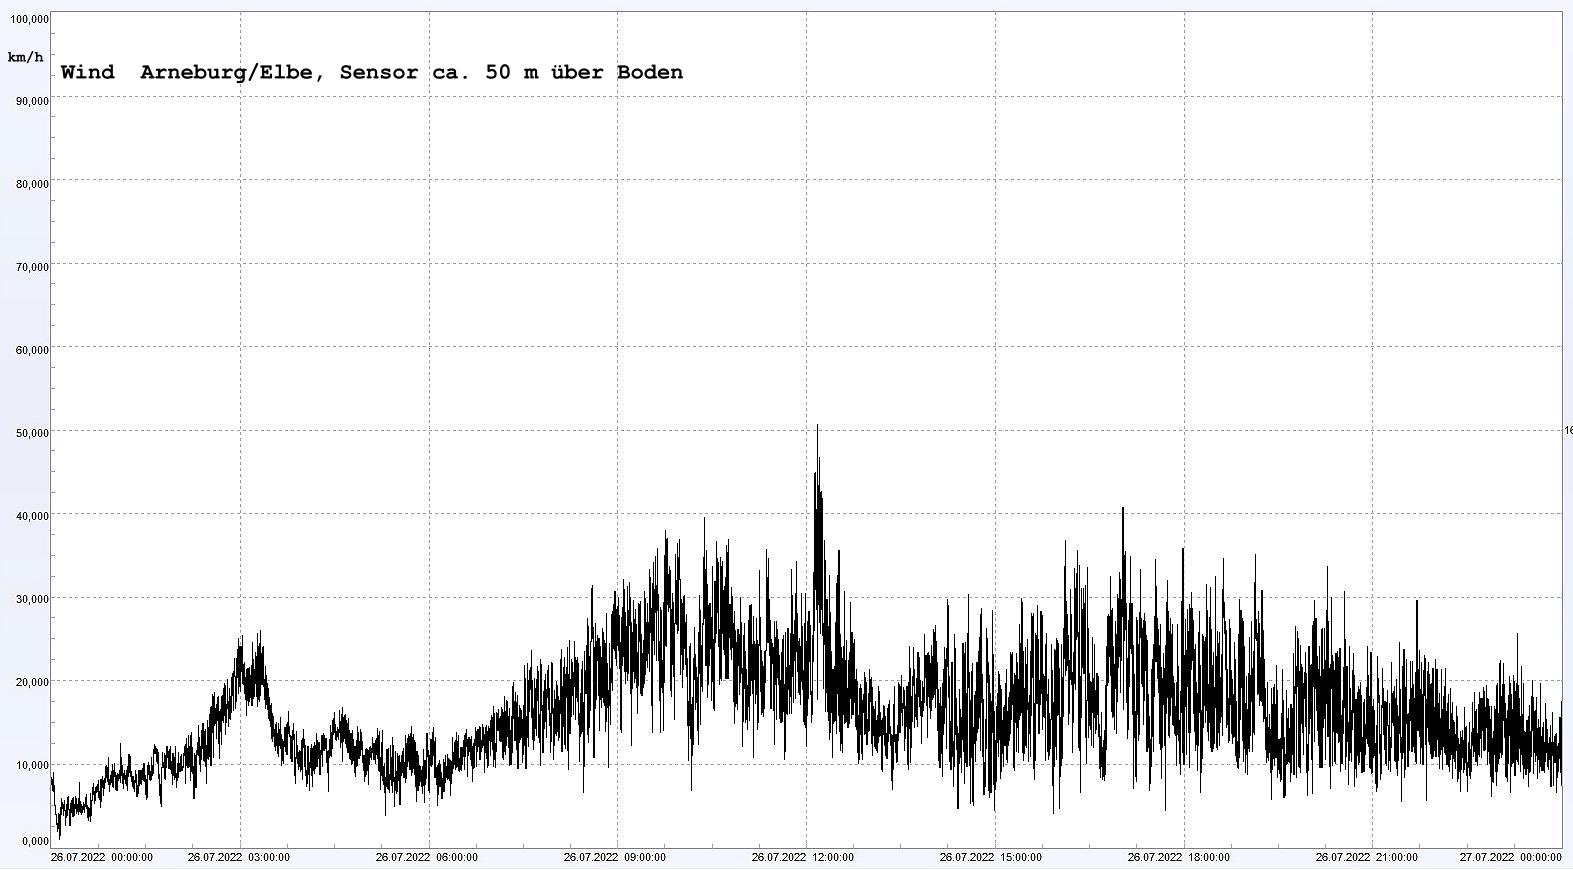 Arneburg Winddaten 26.07.2022, 
  Sensor auf Gebude, ca. 50 m ber Erdboden, 5s-Aufzeichnung